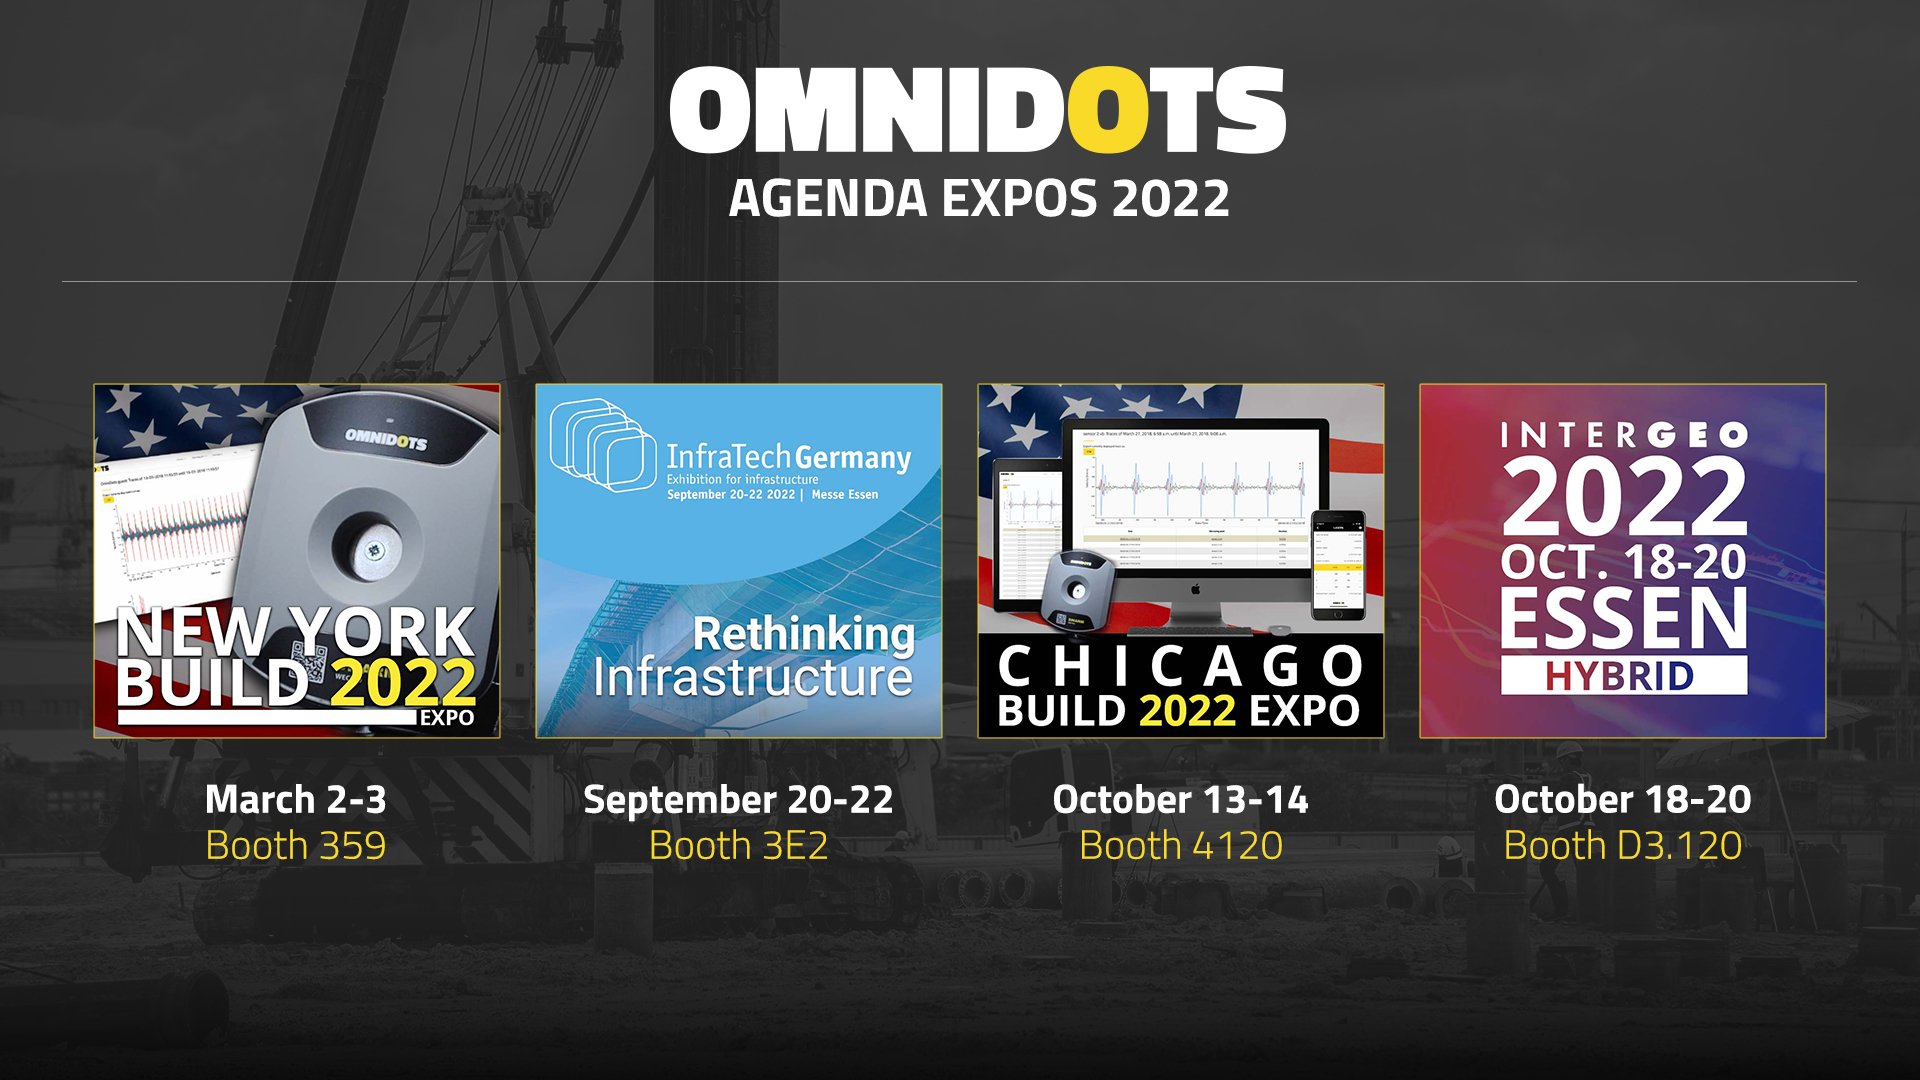 Omnidots Agenda Expos 2022